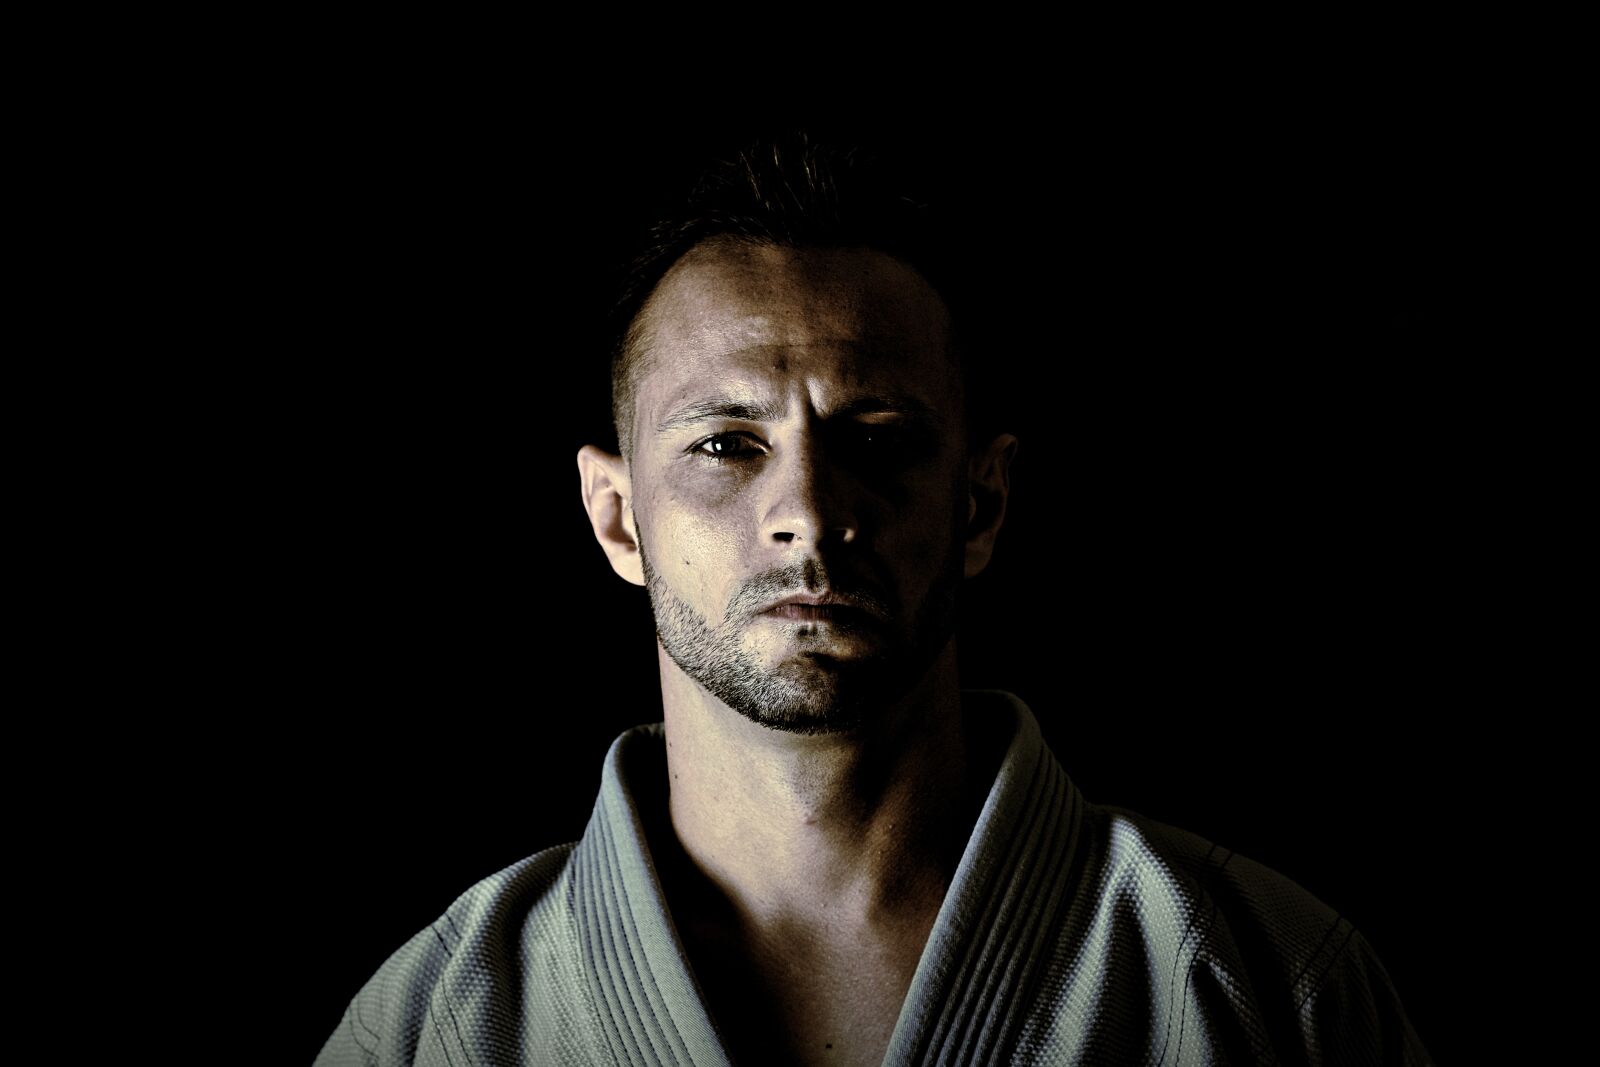 Nikon D5200 sample photo. Jujitsu, sport, warrior photography